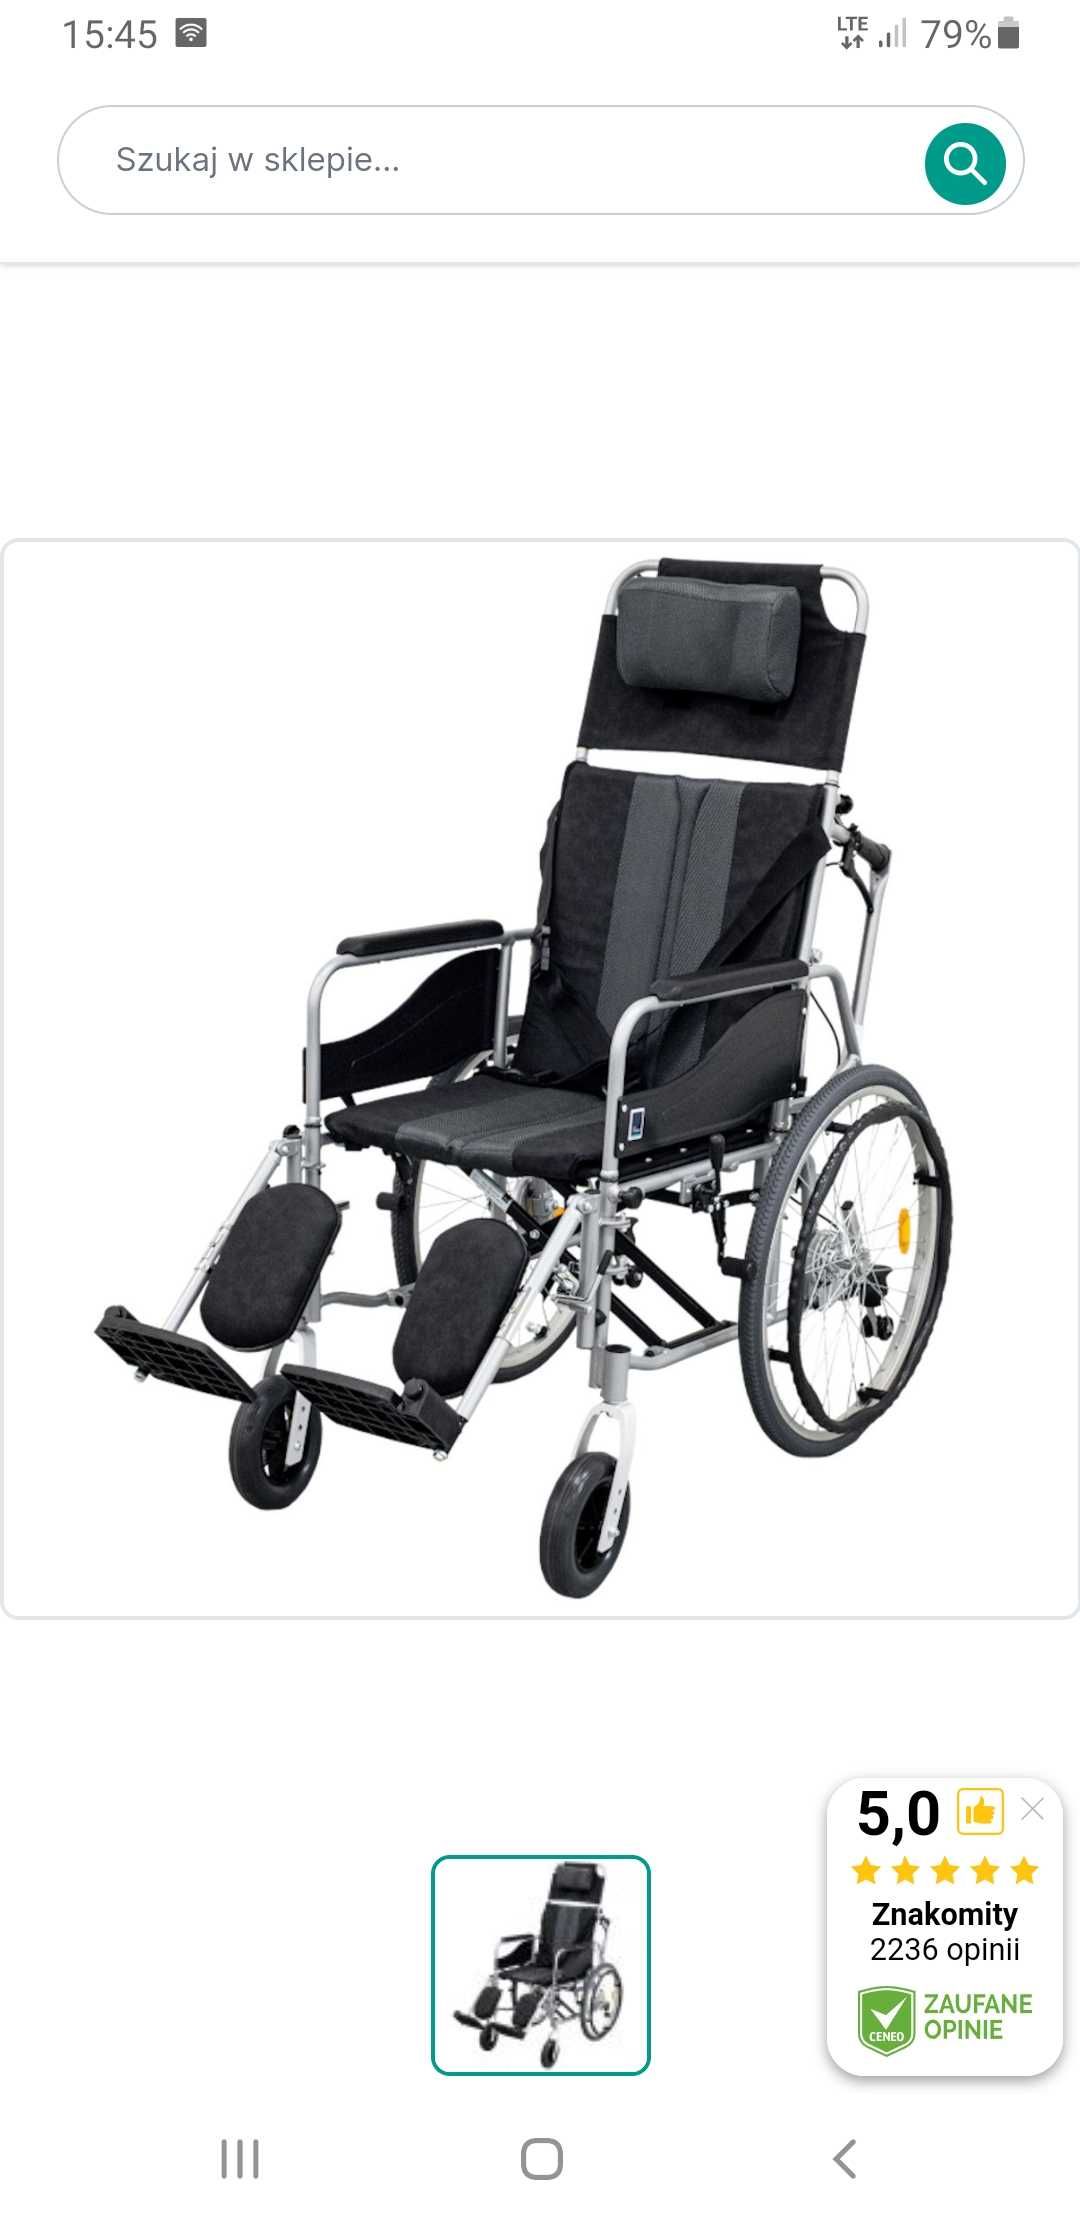 Wózek inwalidzki stabilizujący plecy i głowę Stable-TIM ALH 008 Timago